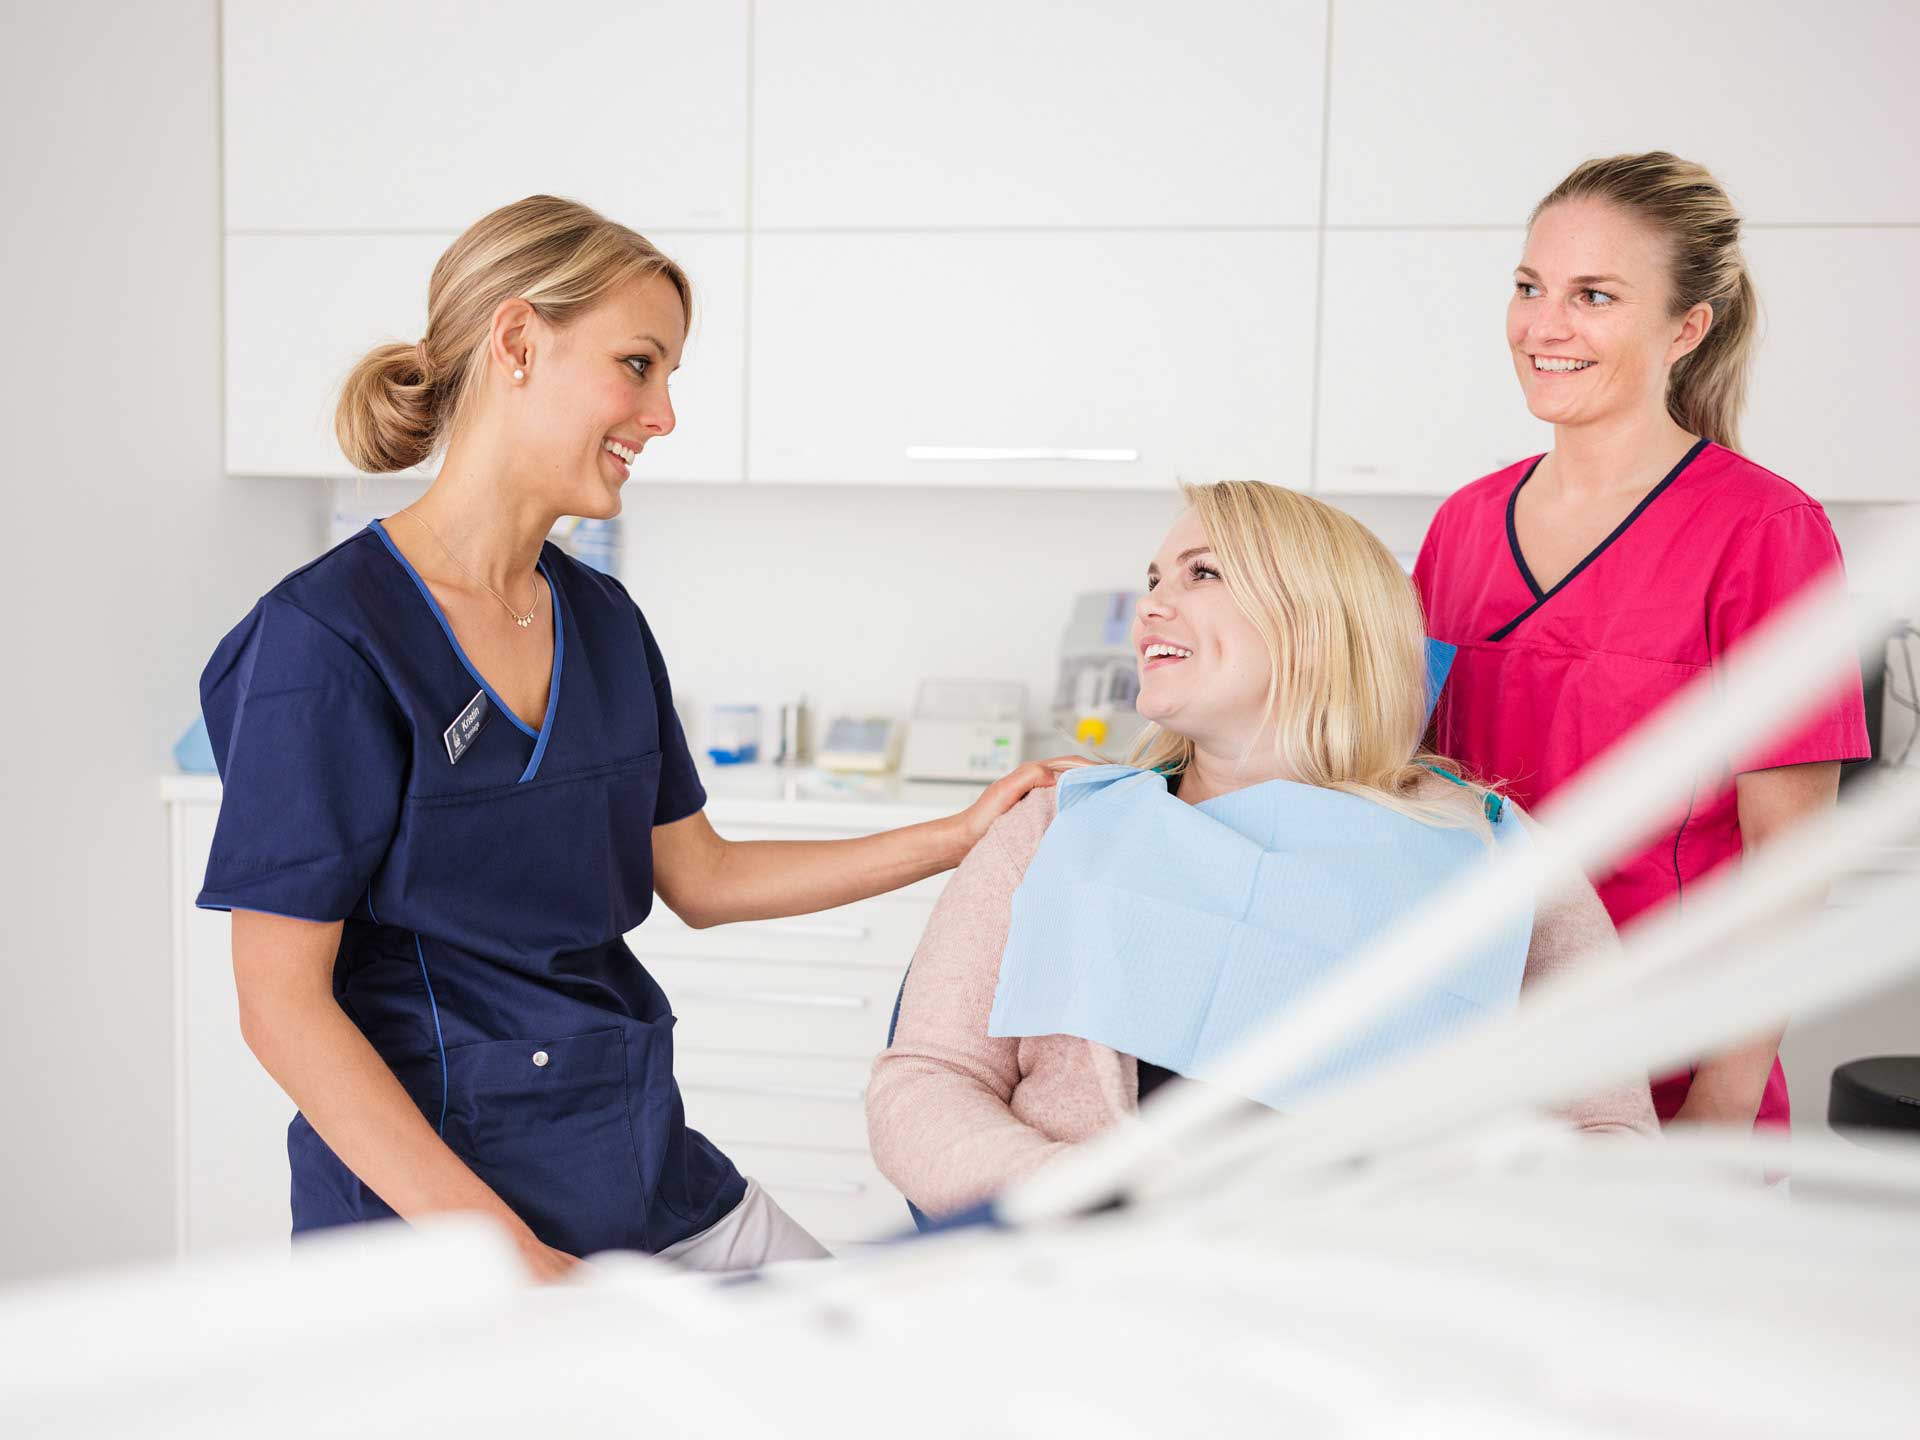 Tannleger som prater med en pasient